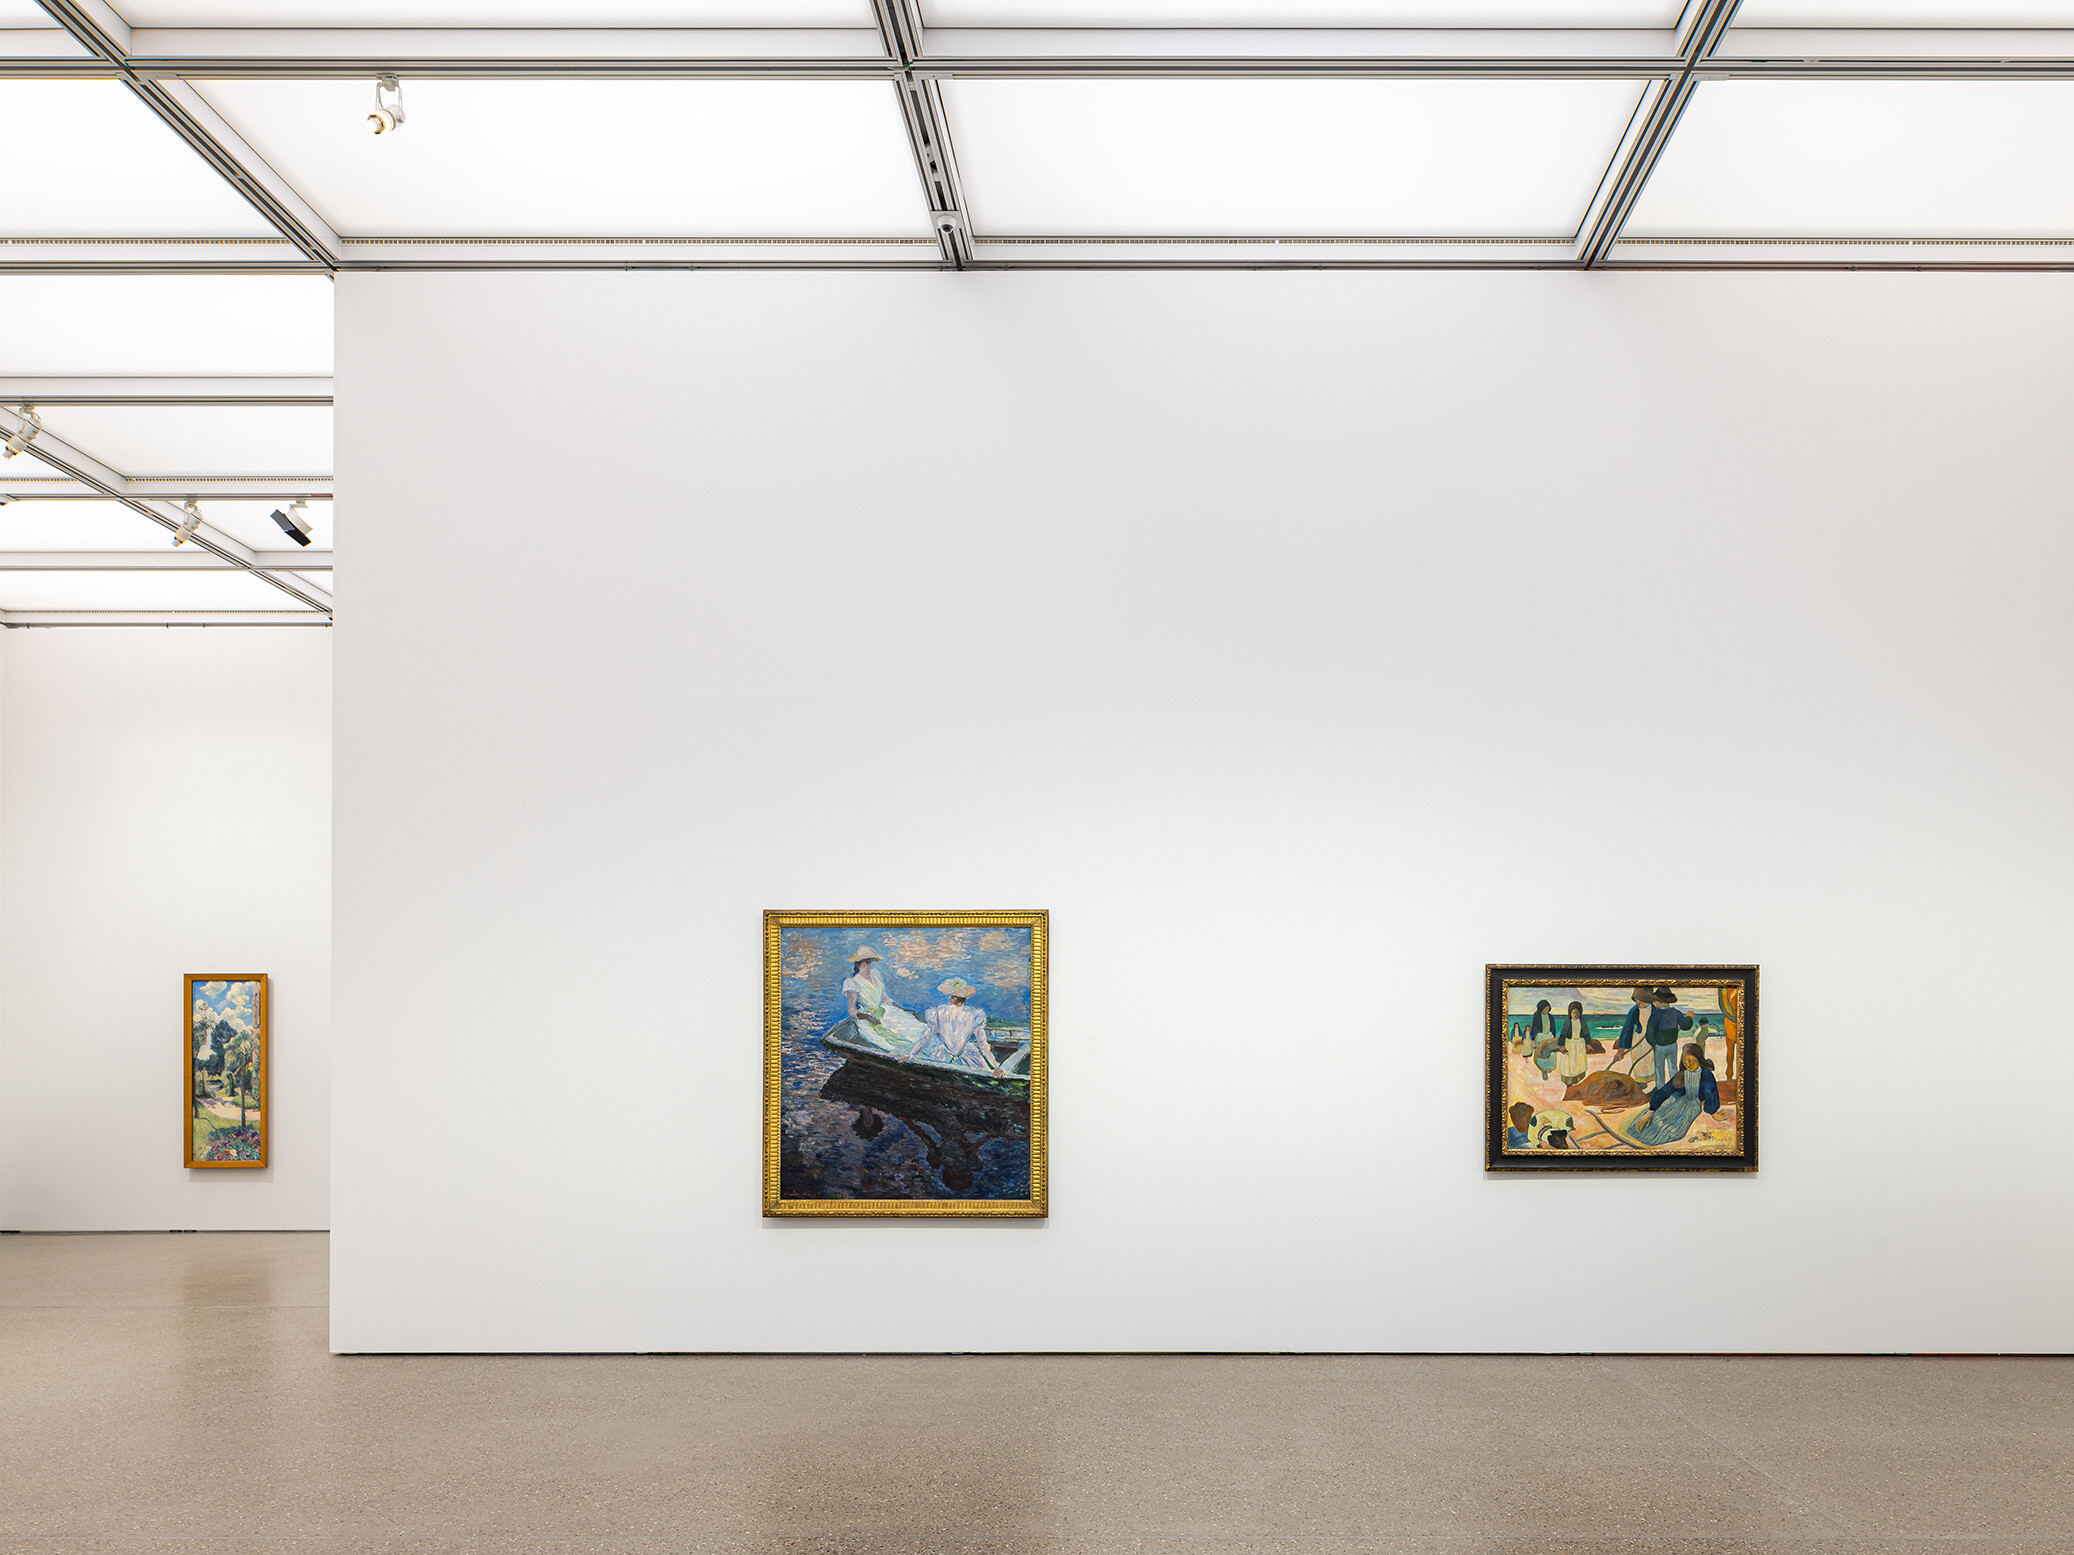 Installationsansicht „Renoir, Monet, Gauguin. Bilder einer fließenden Welt“ (06.02. – 15.5.22) im Museum Folkwang. 

